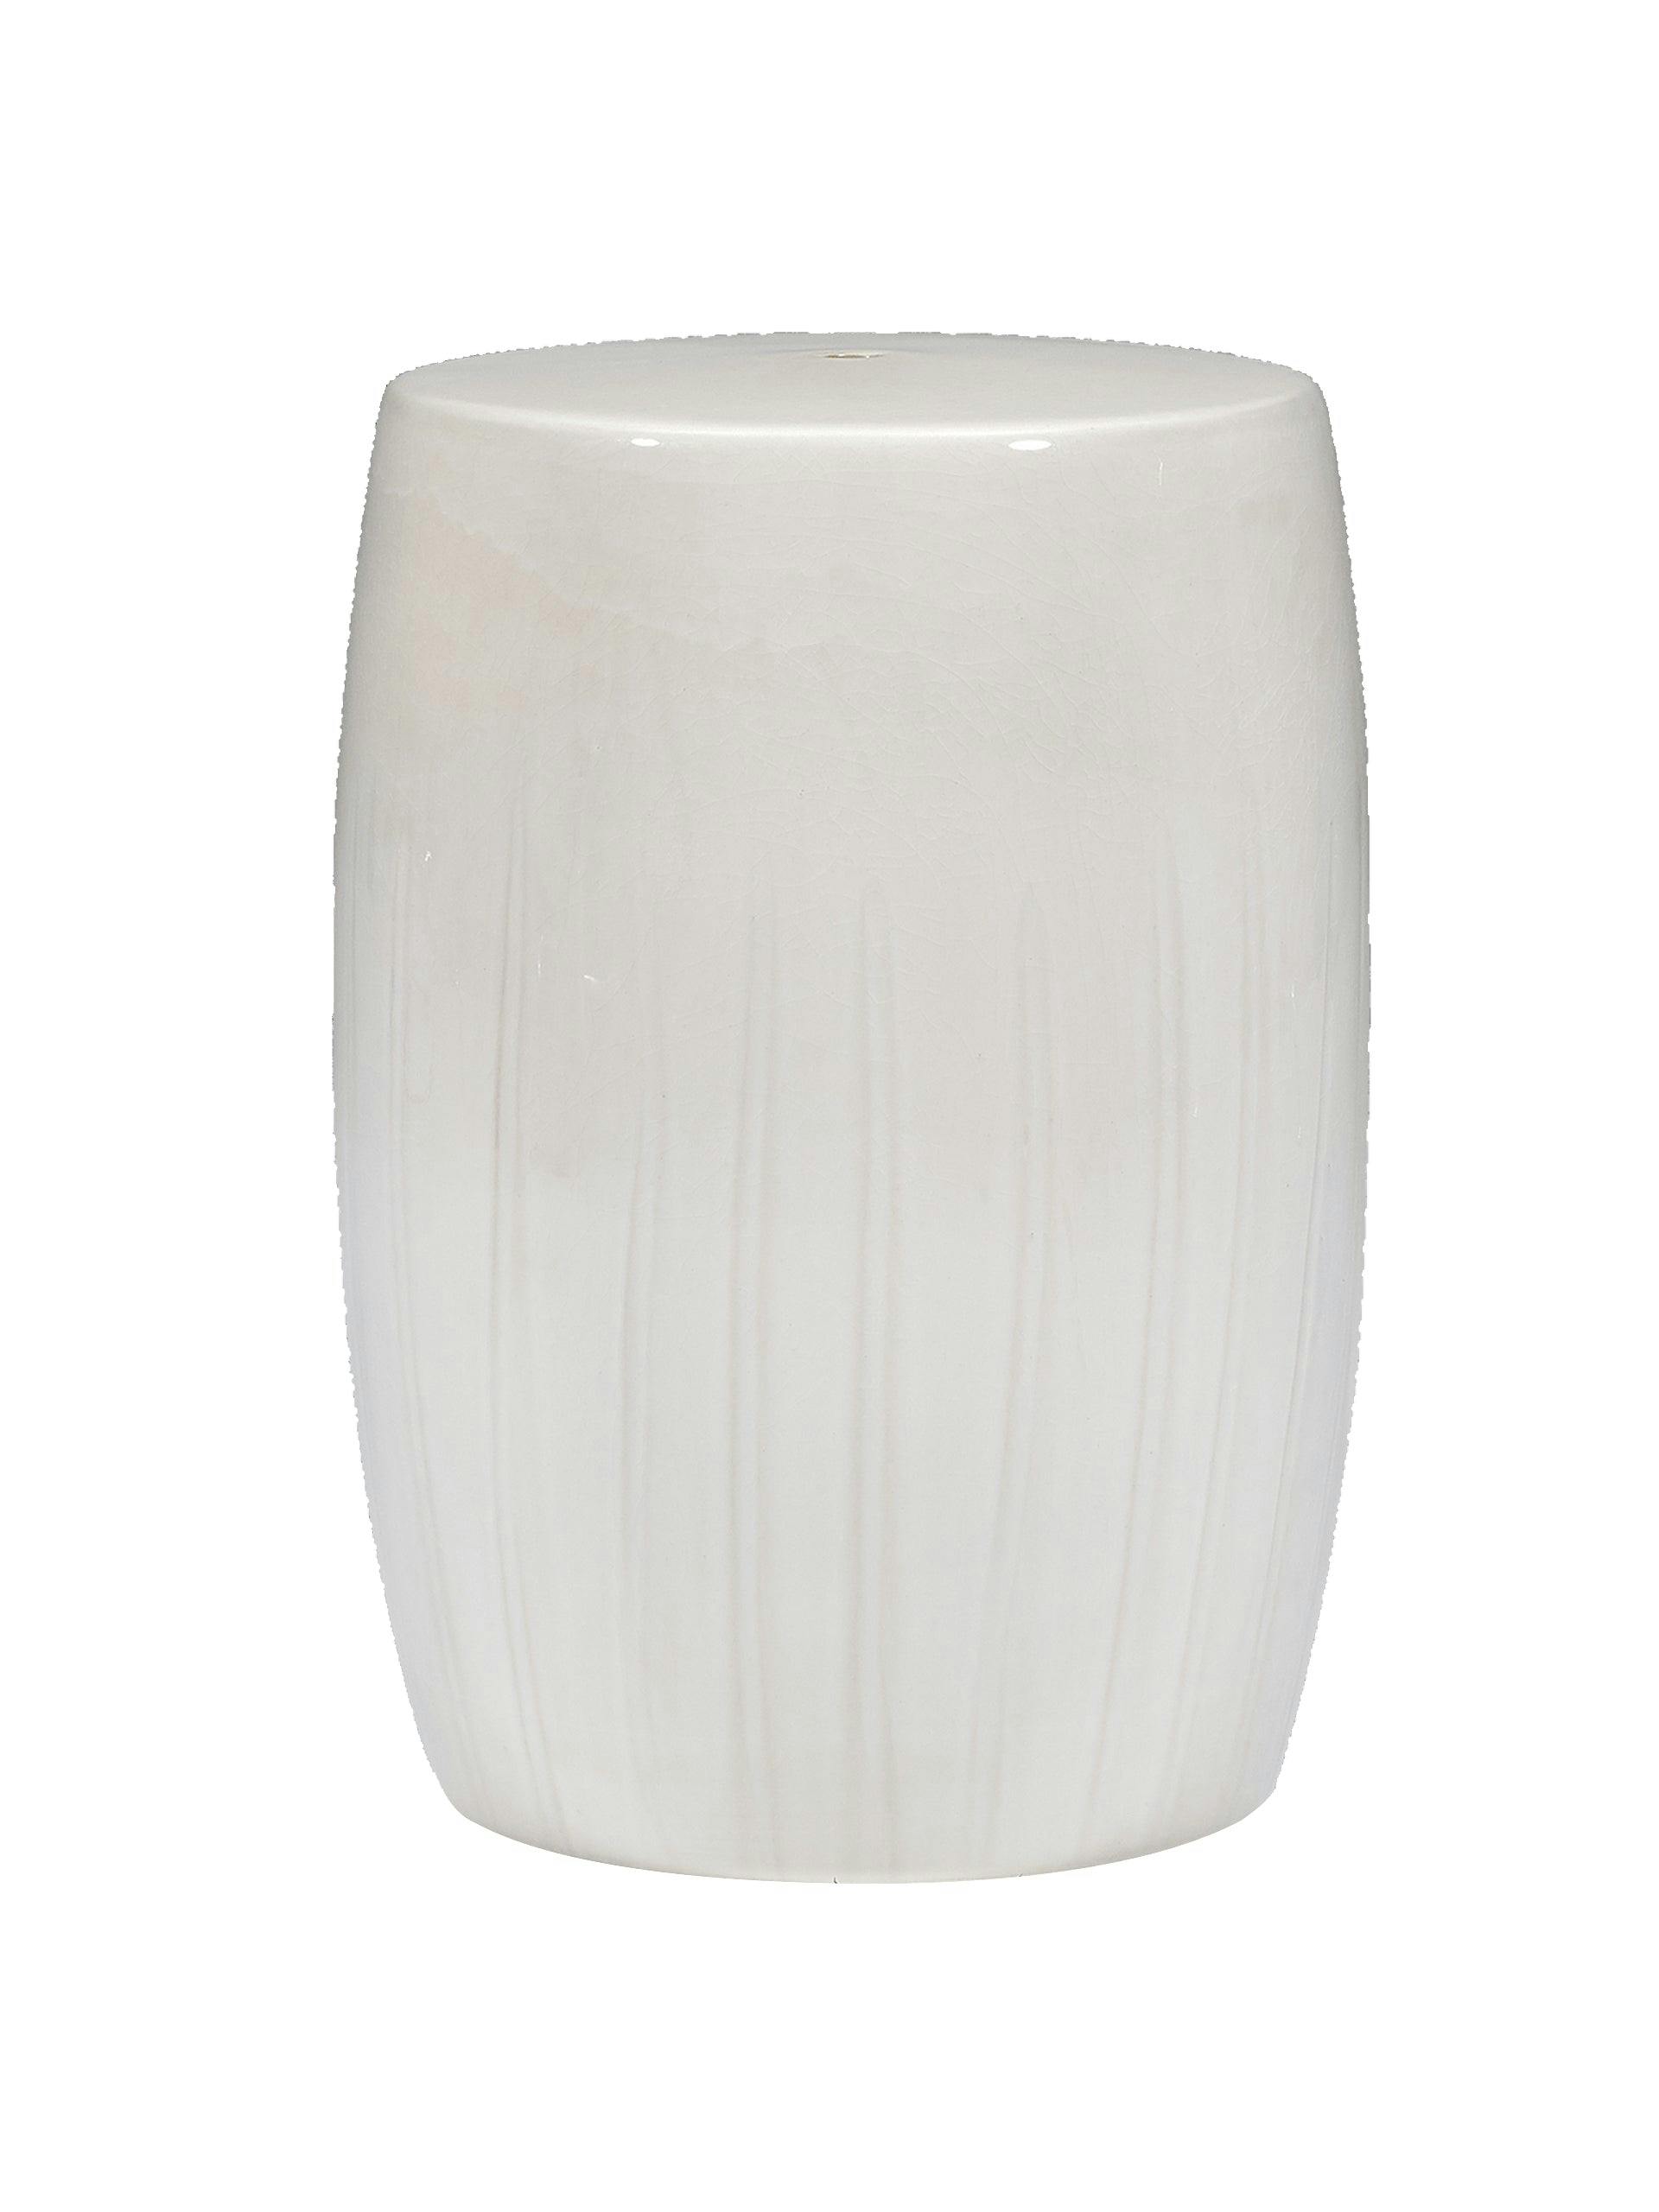 Beswick white ceramic stool